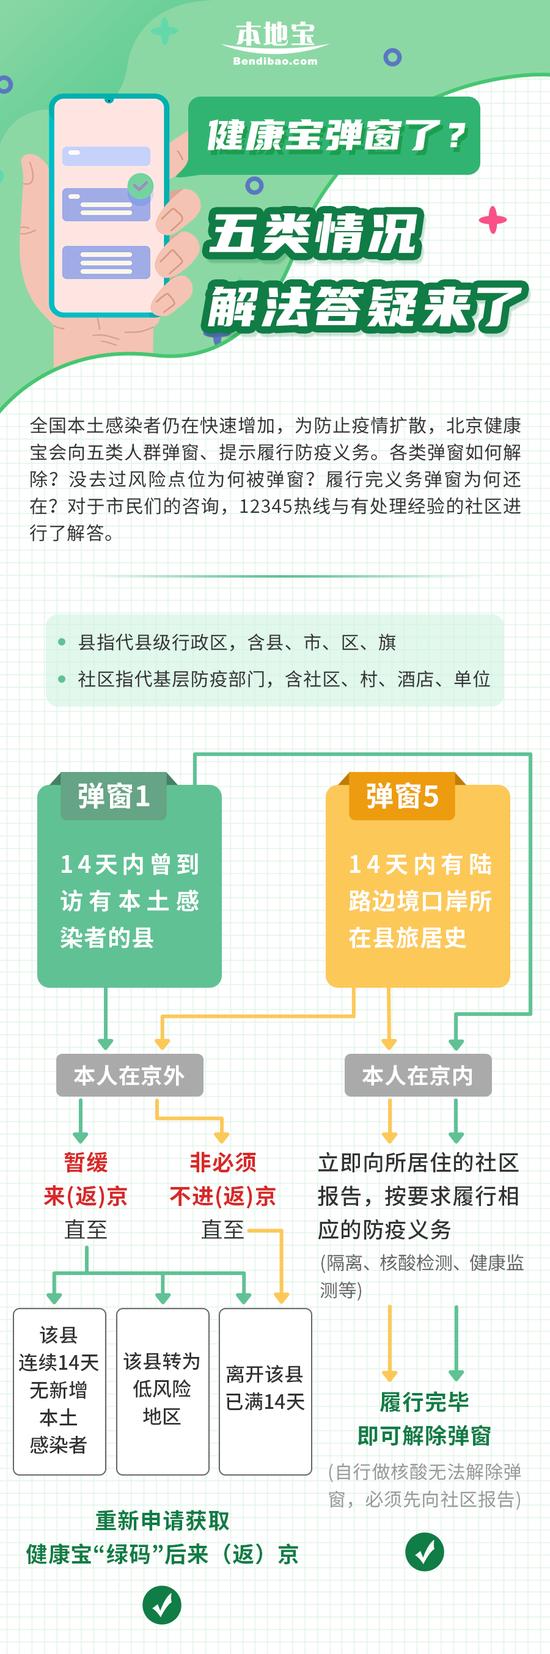 再发一次！北京健康宝弹窗了怎么办？看清编号1、2、3、4、5，解决方法看这里！